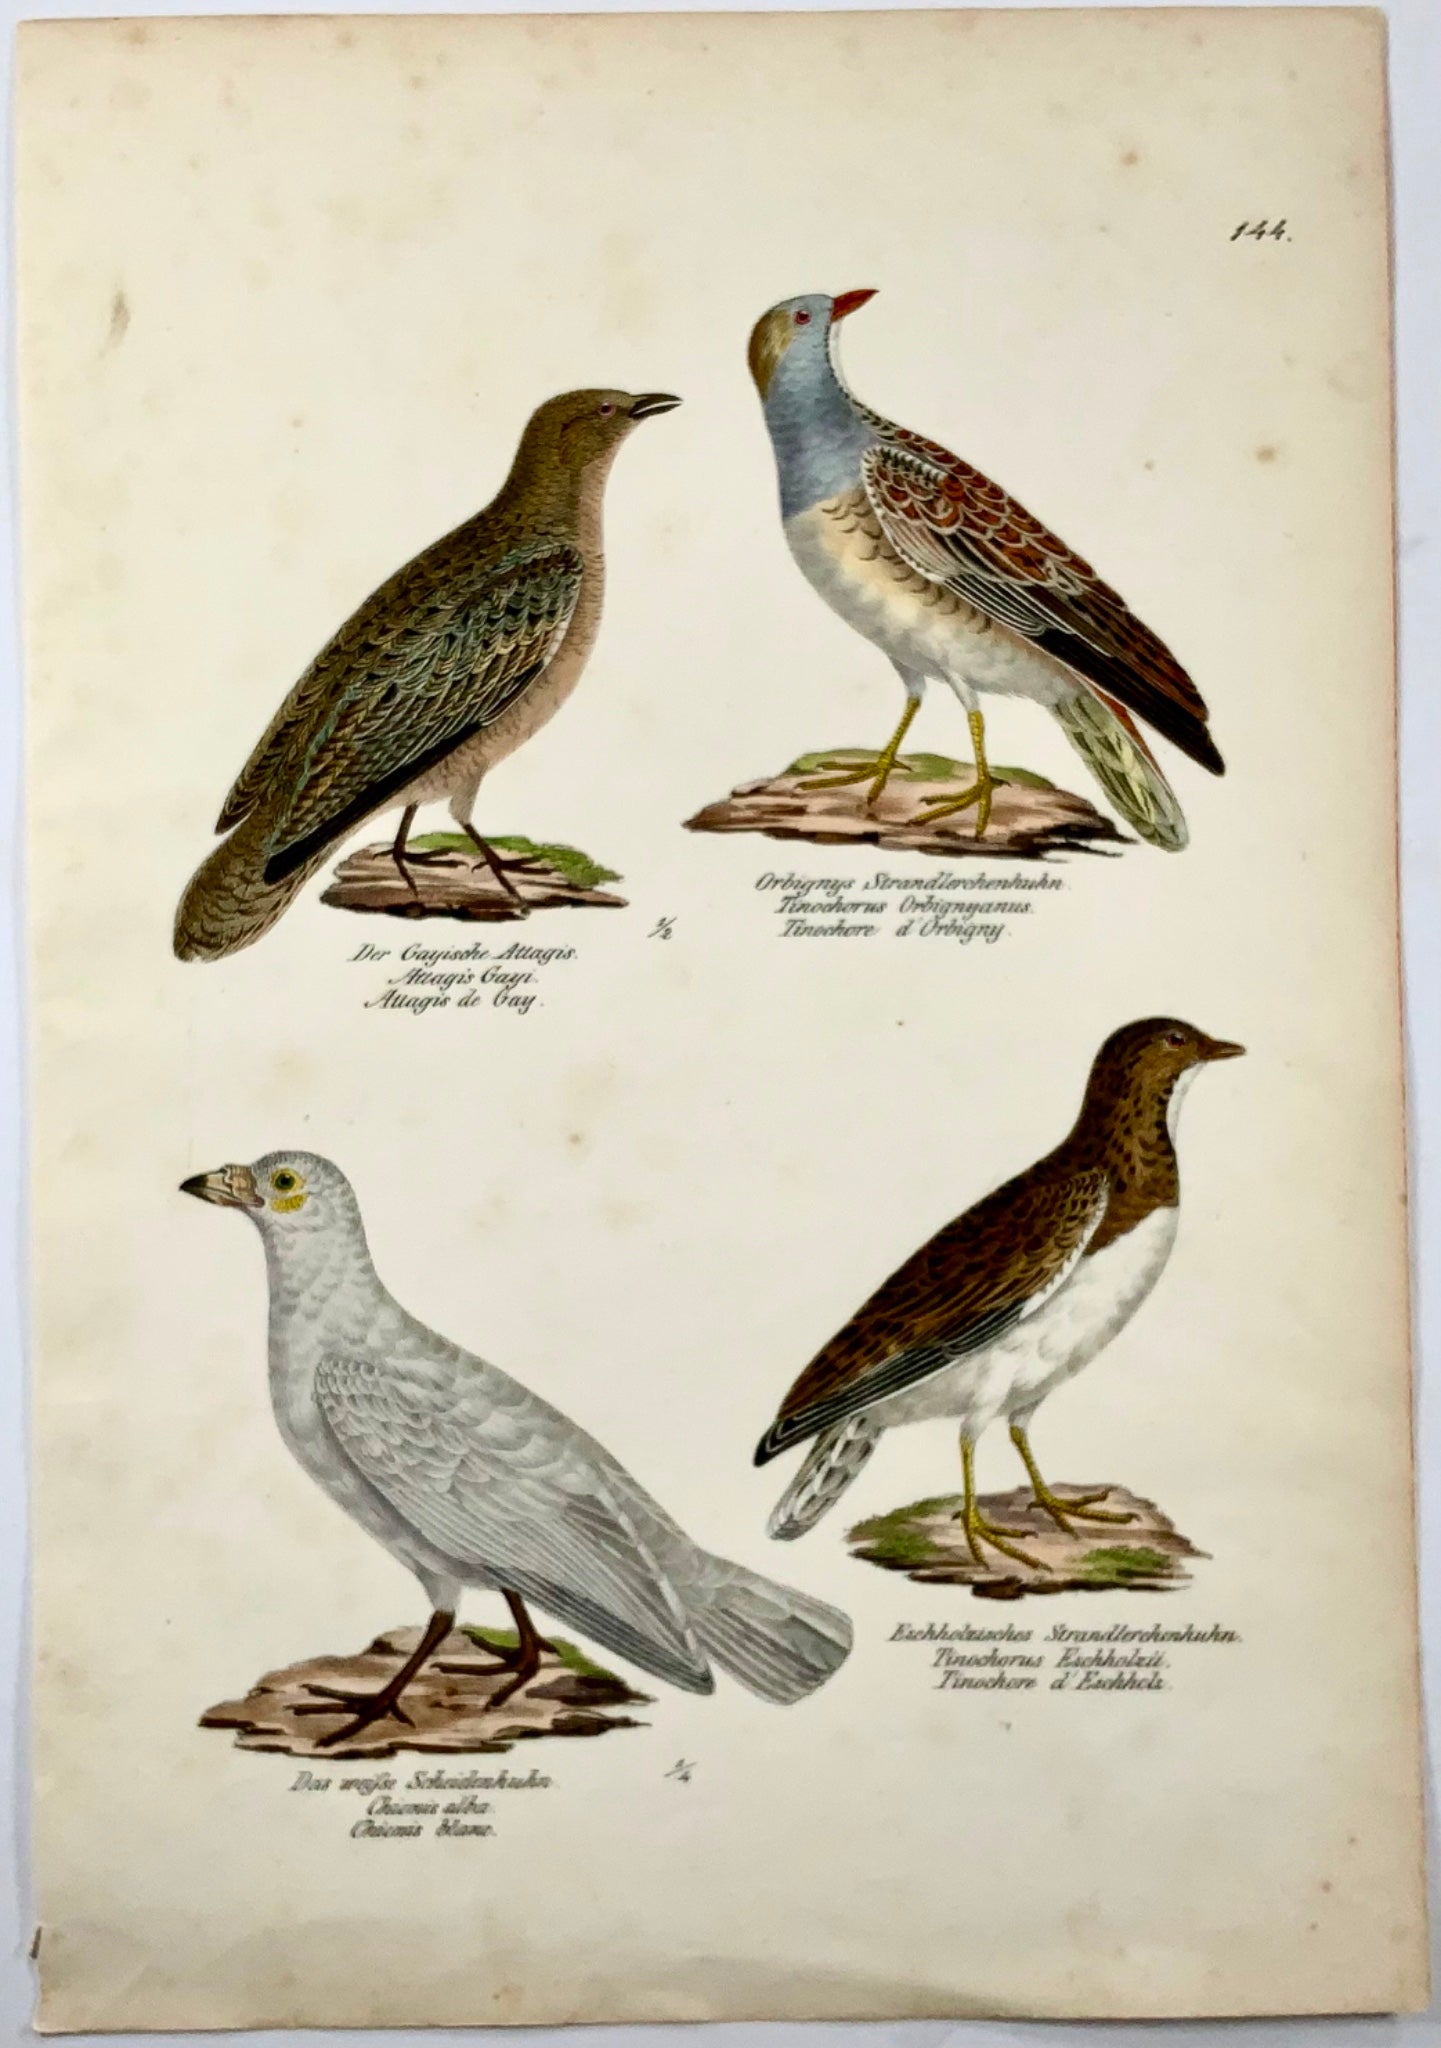 1830 Seedsnipes, ornitologia, litografia in folio colorata a mano di Brodtmann